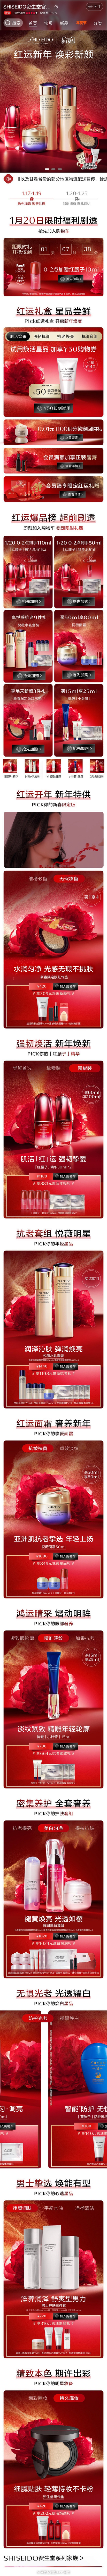 Shiseido资生堂 护肤 大促色 产...